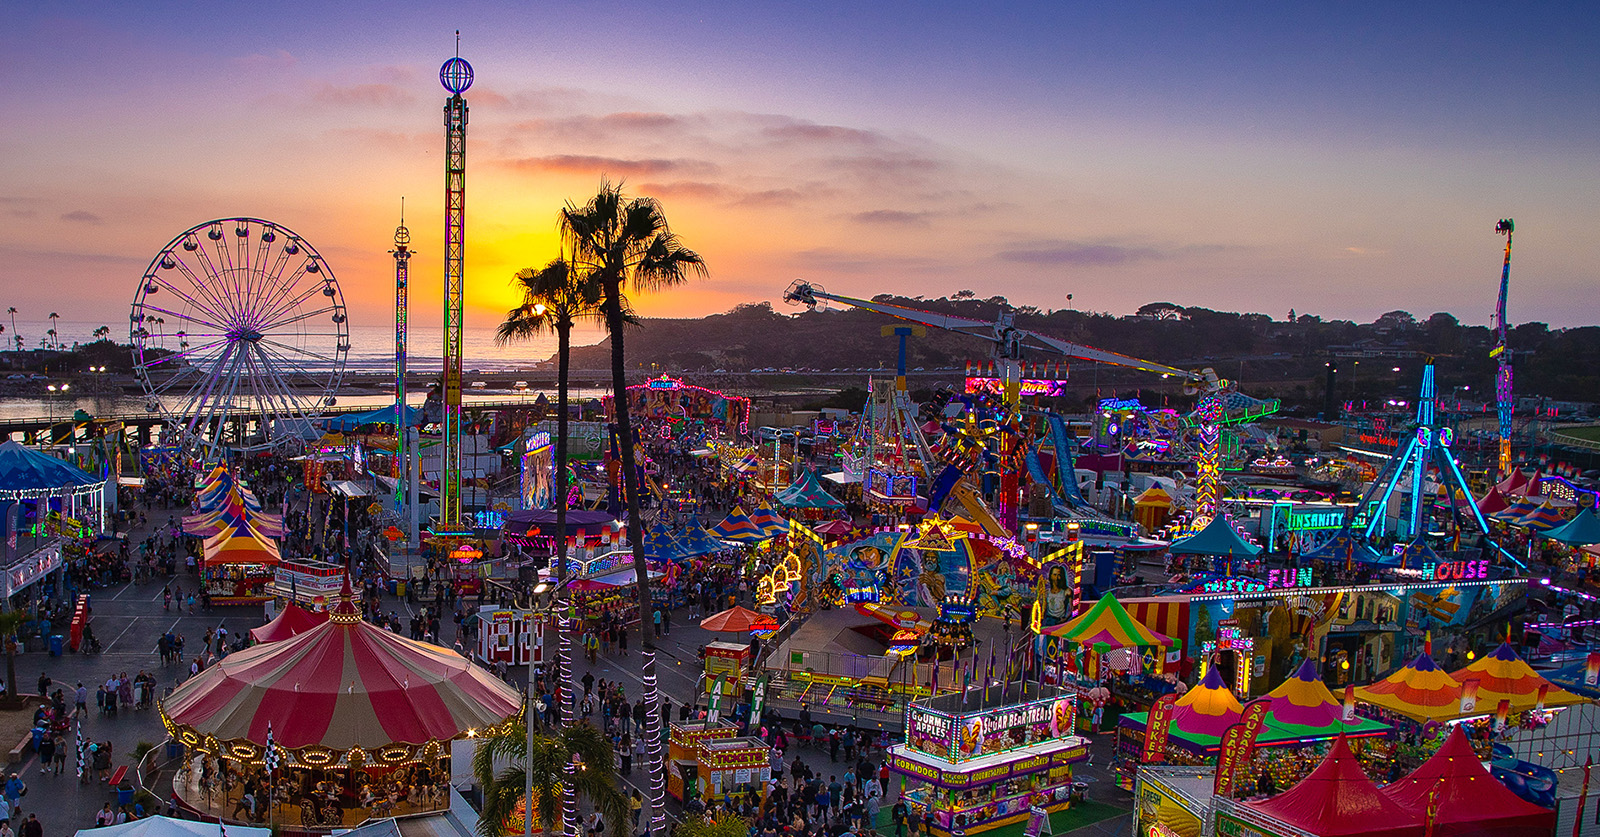 San Diego County Fair is a summer staple event